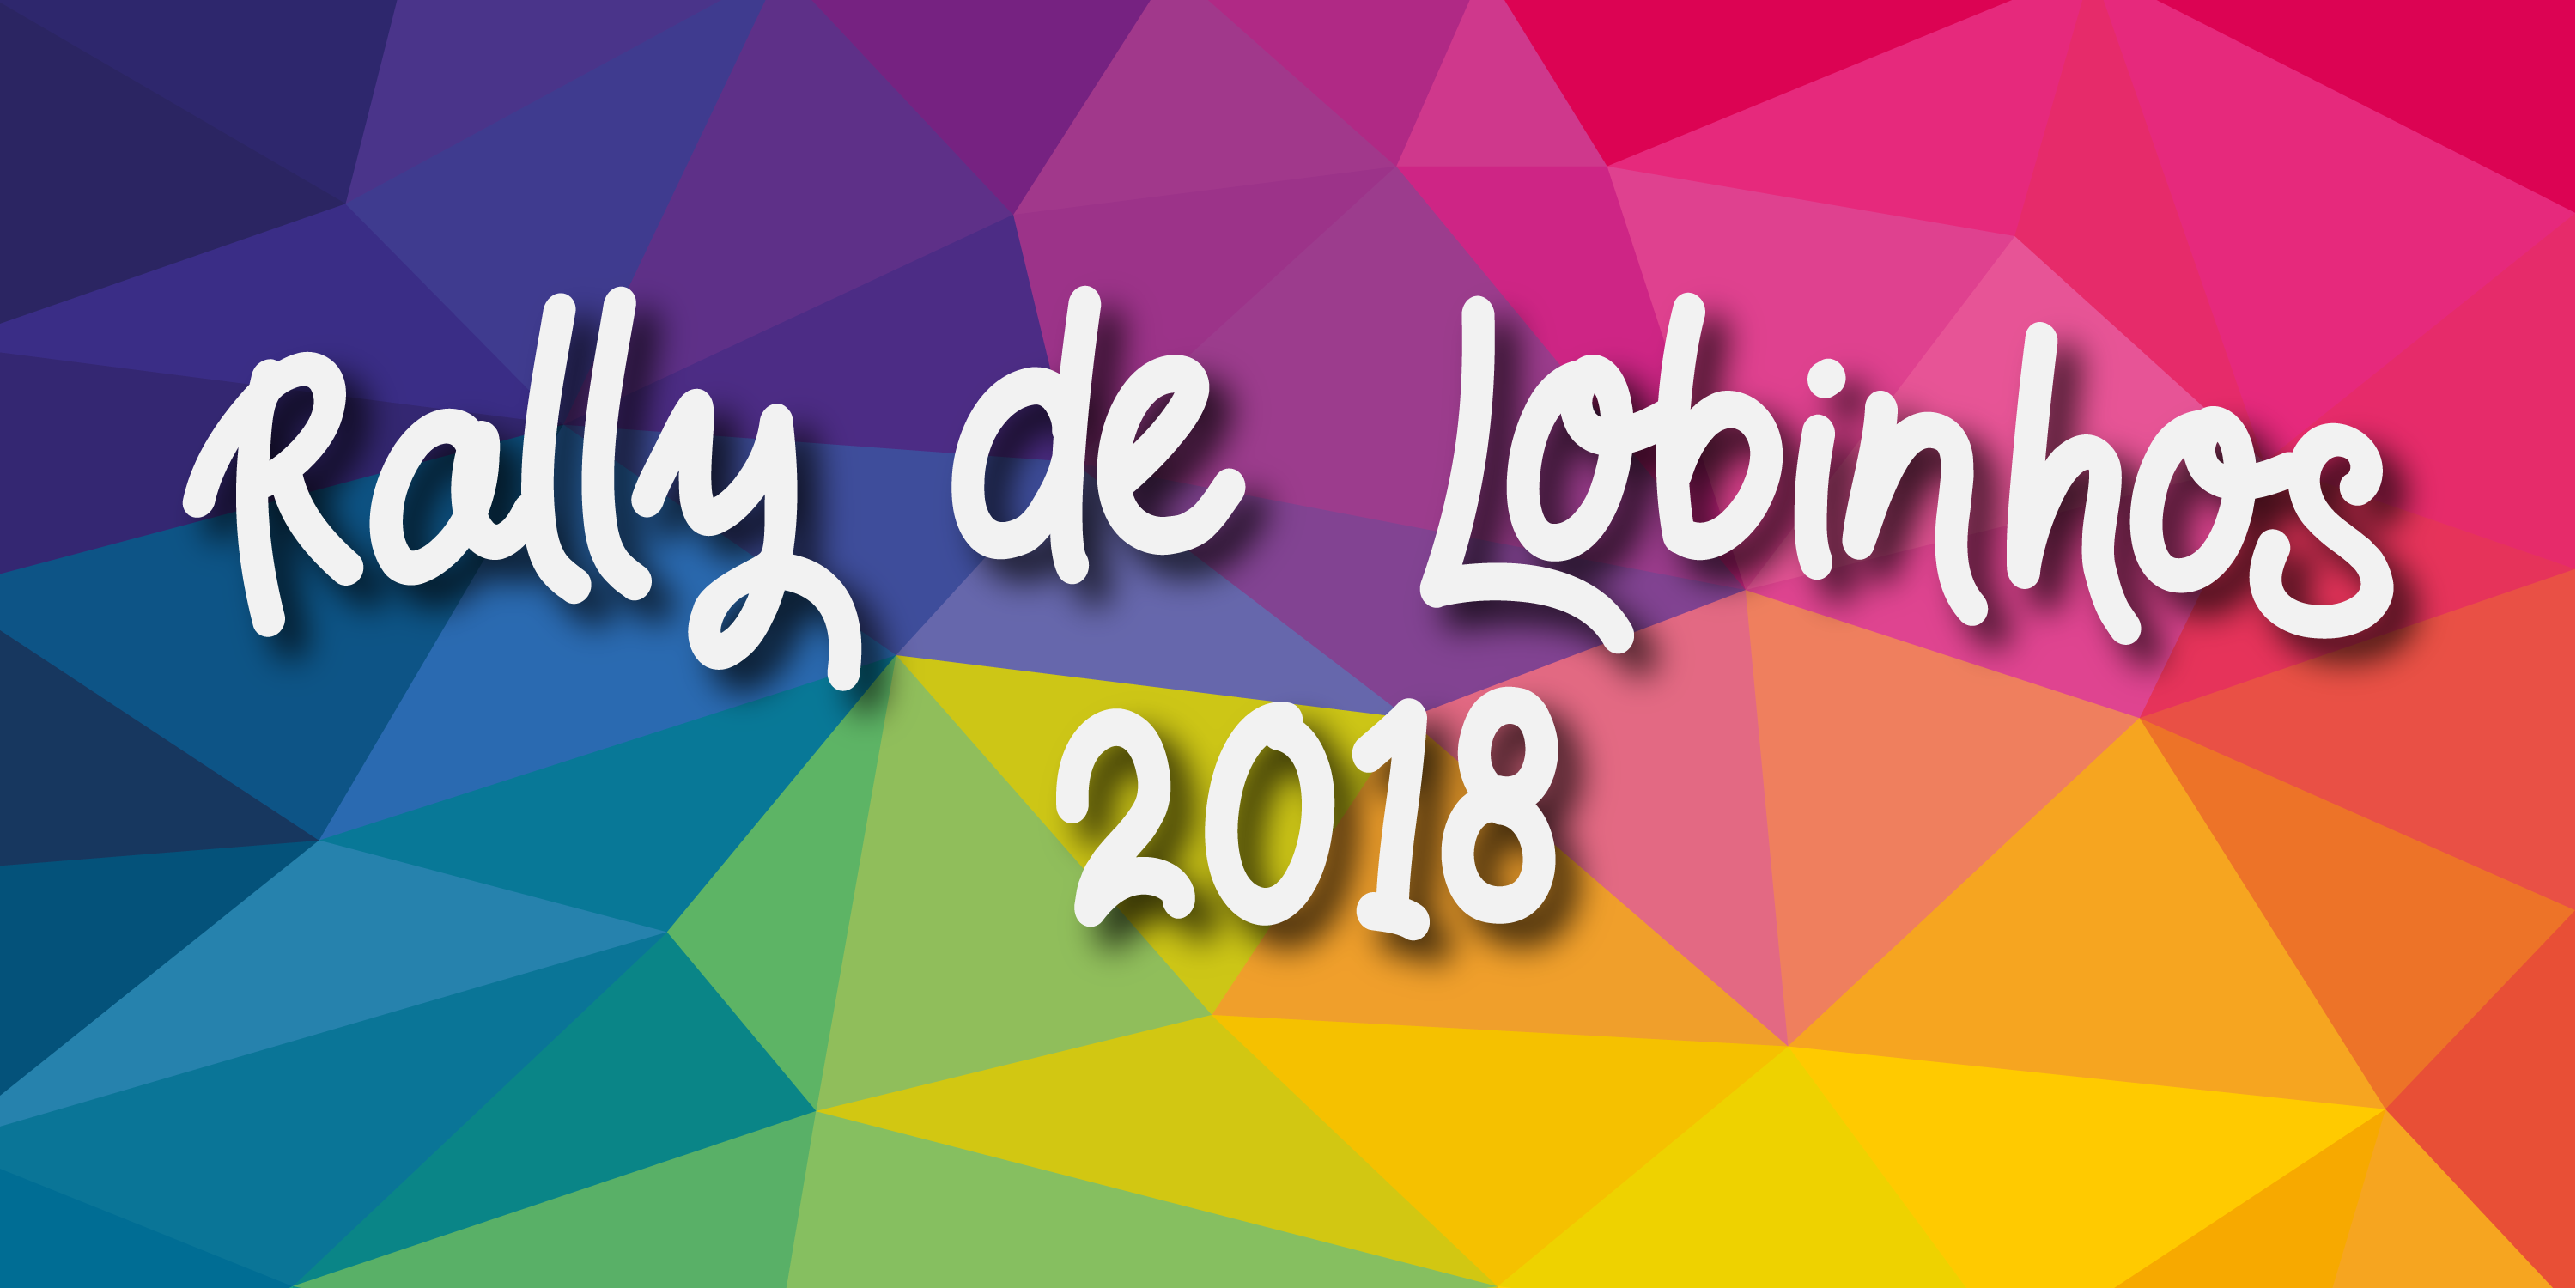 Rally de Lobinhos – 2018